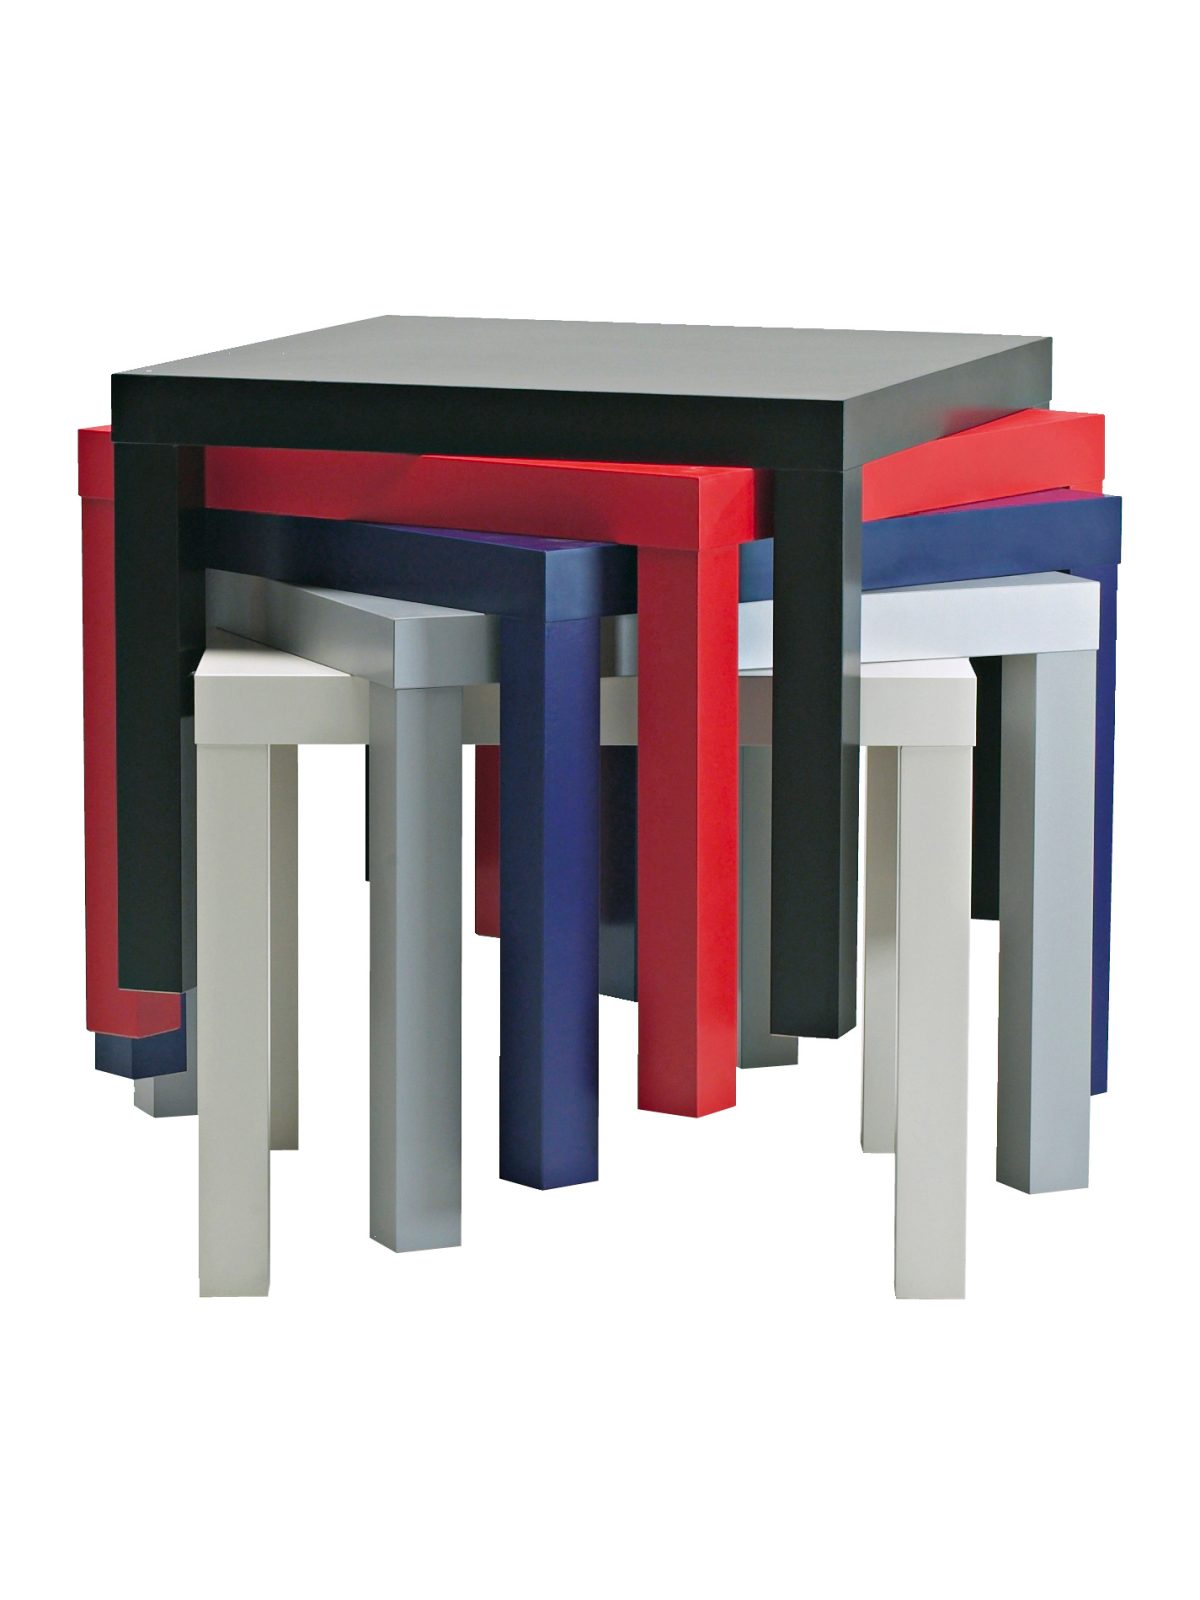 Fyrkantiga små bord, LACK, i olika färger, travade på varandra.